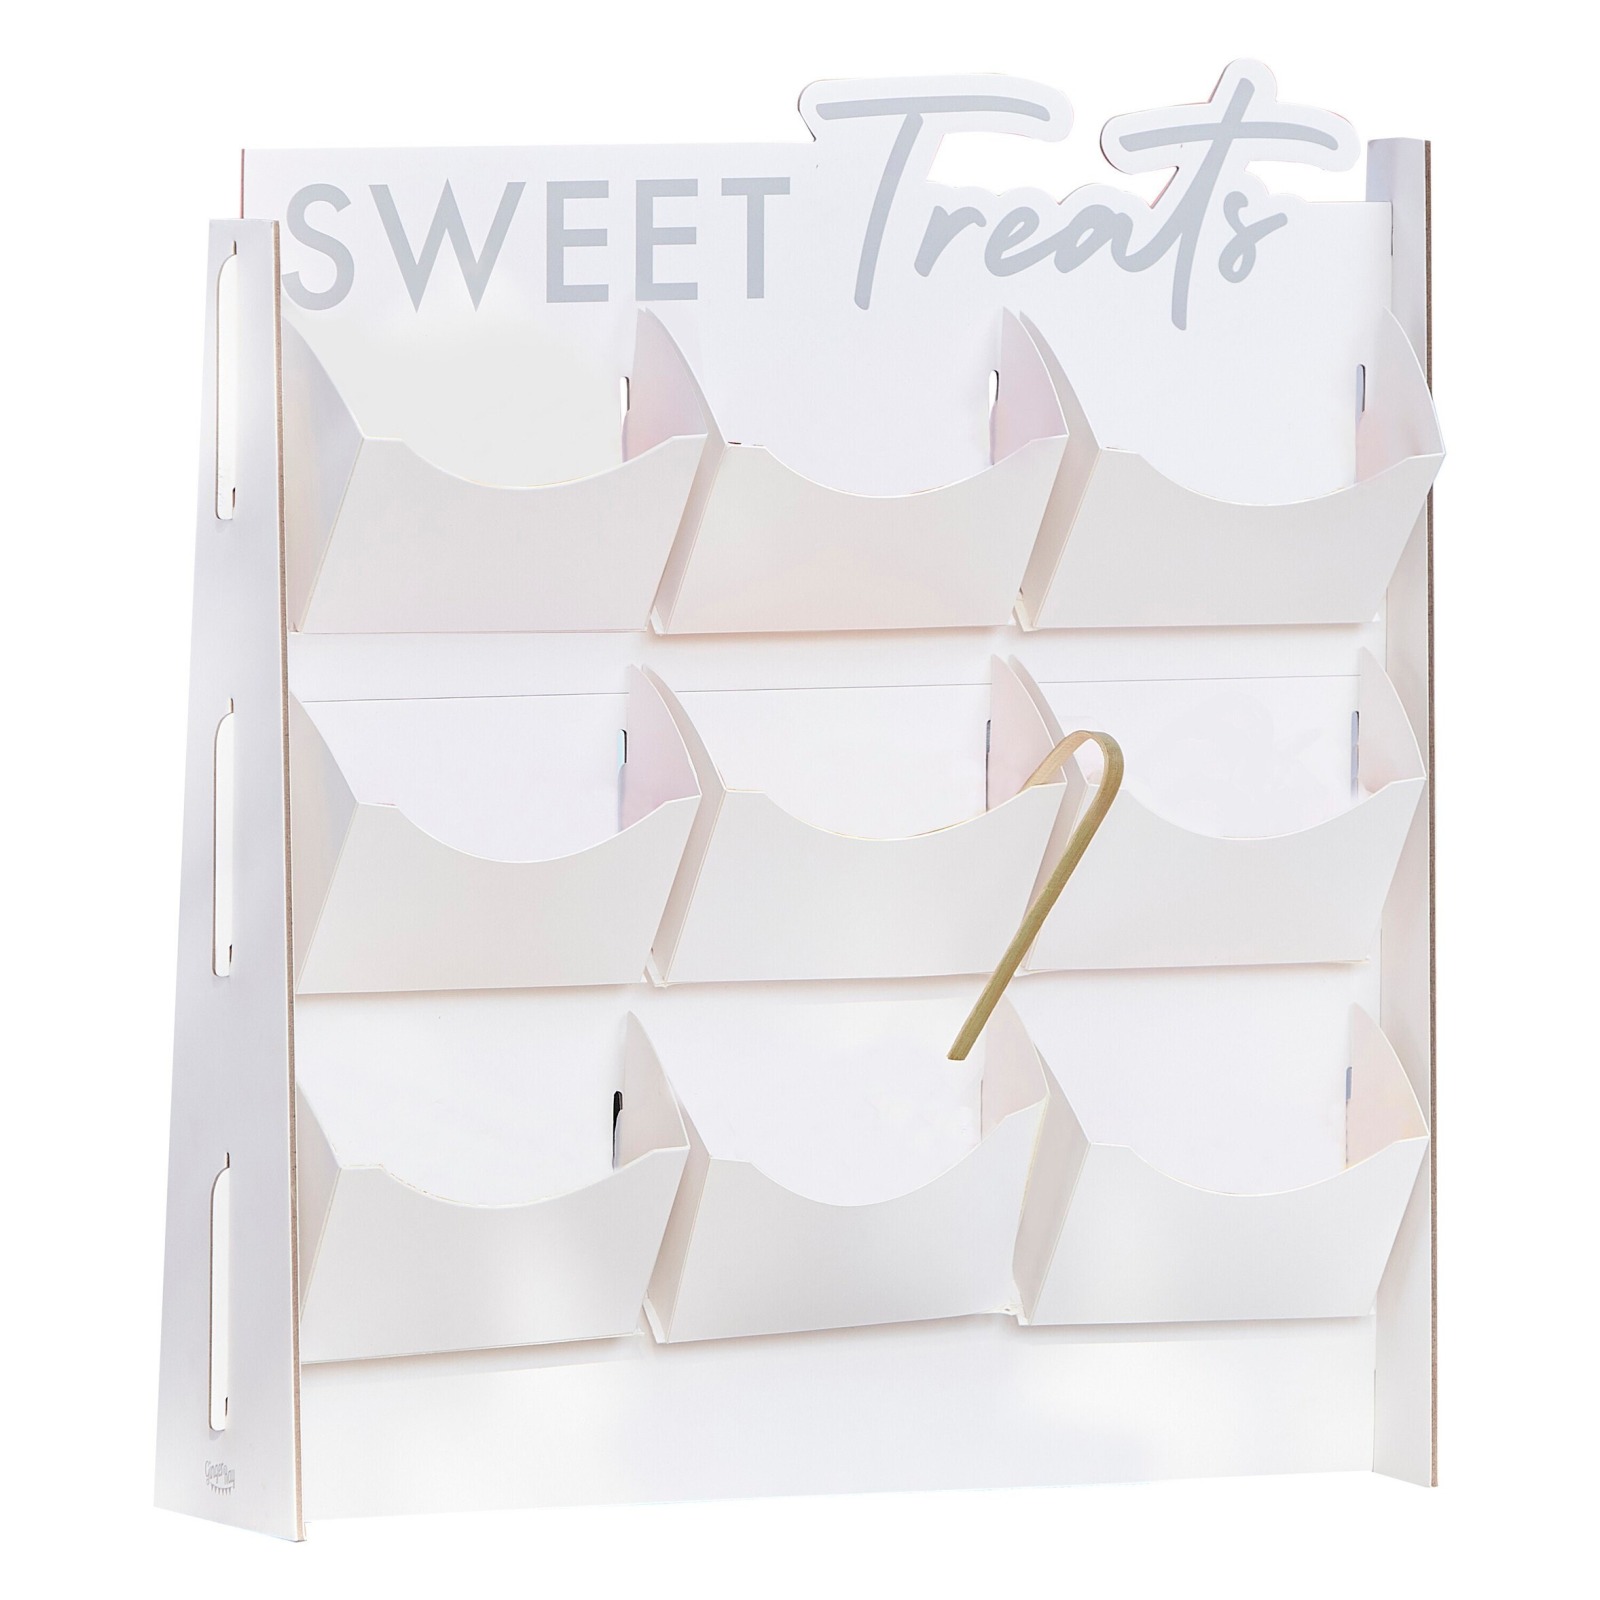 Süßigkeiten Ständer - Candy Bar | Aufsteller mit 9 Fächern mit Zange zum selbst befüllen 2